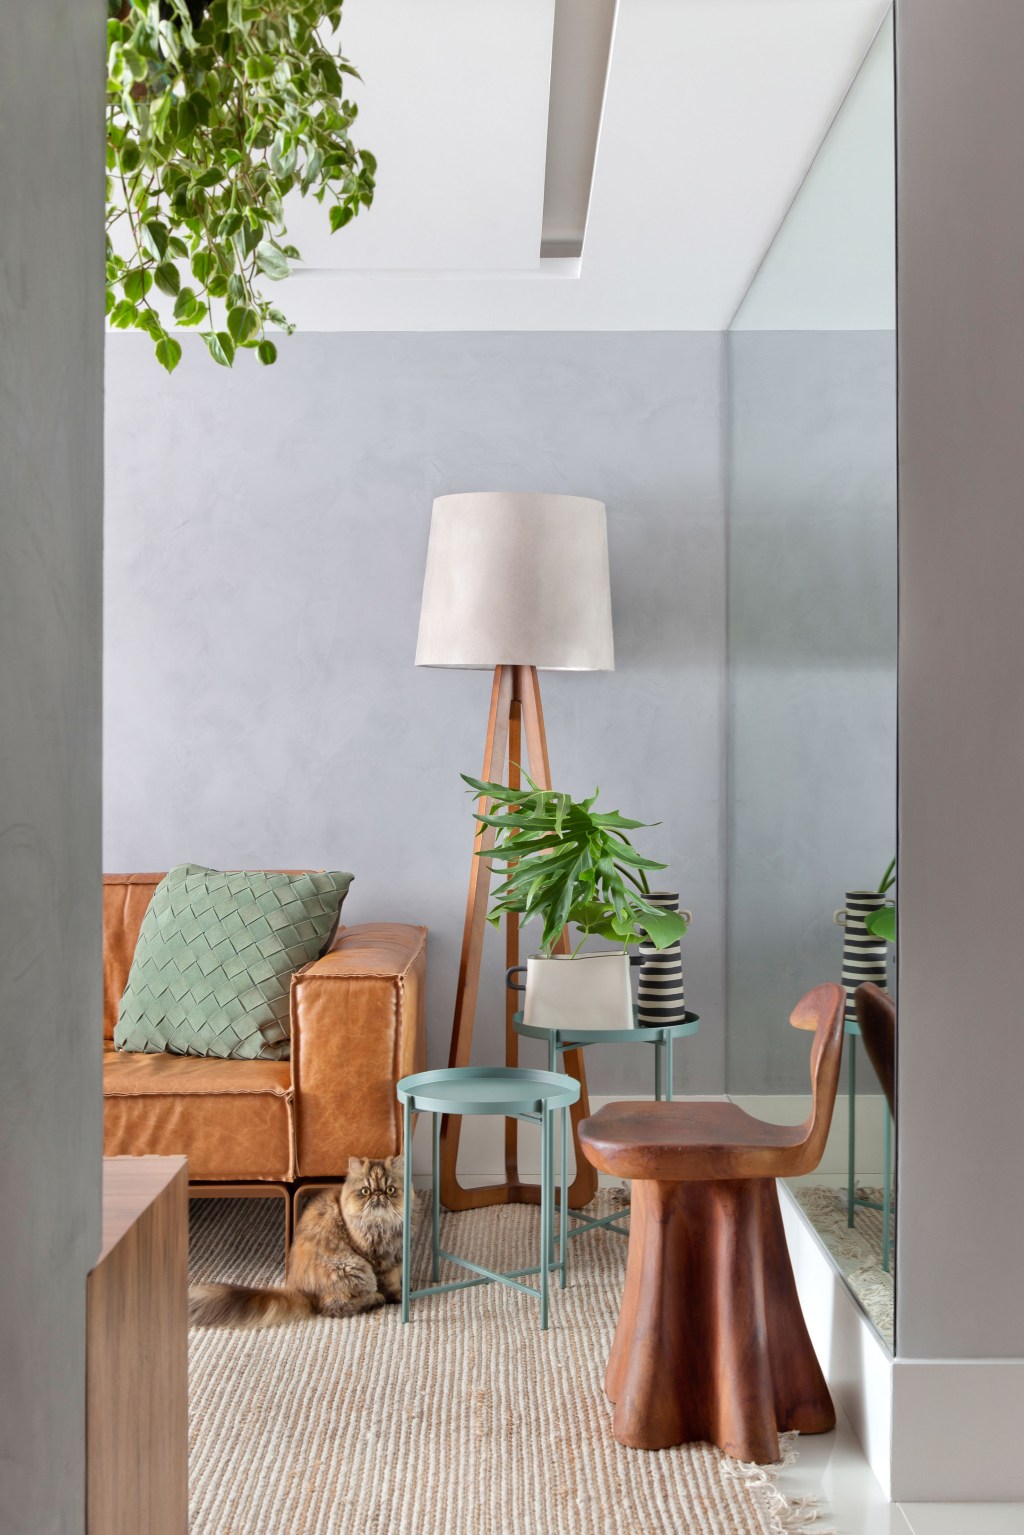 Sem quebra-quebra, apê de 130 m² no Rio ganha décor cozy e minimalista. Projeto Travessa Arquitetura. Na foto, sala com sofá de couro, quadro e tapete.